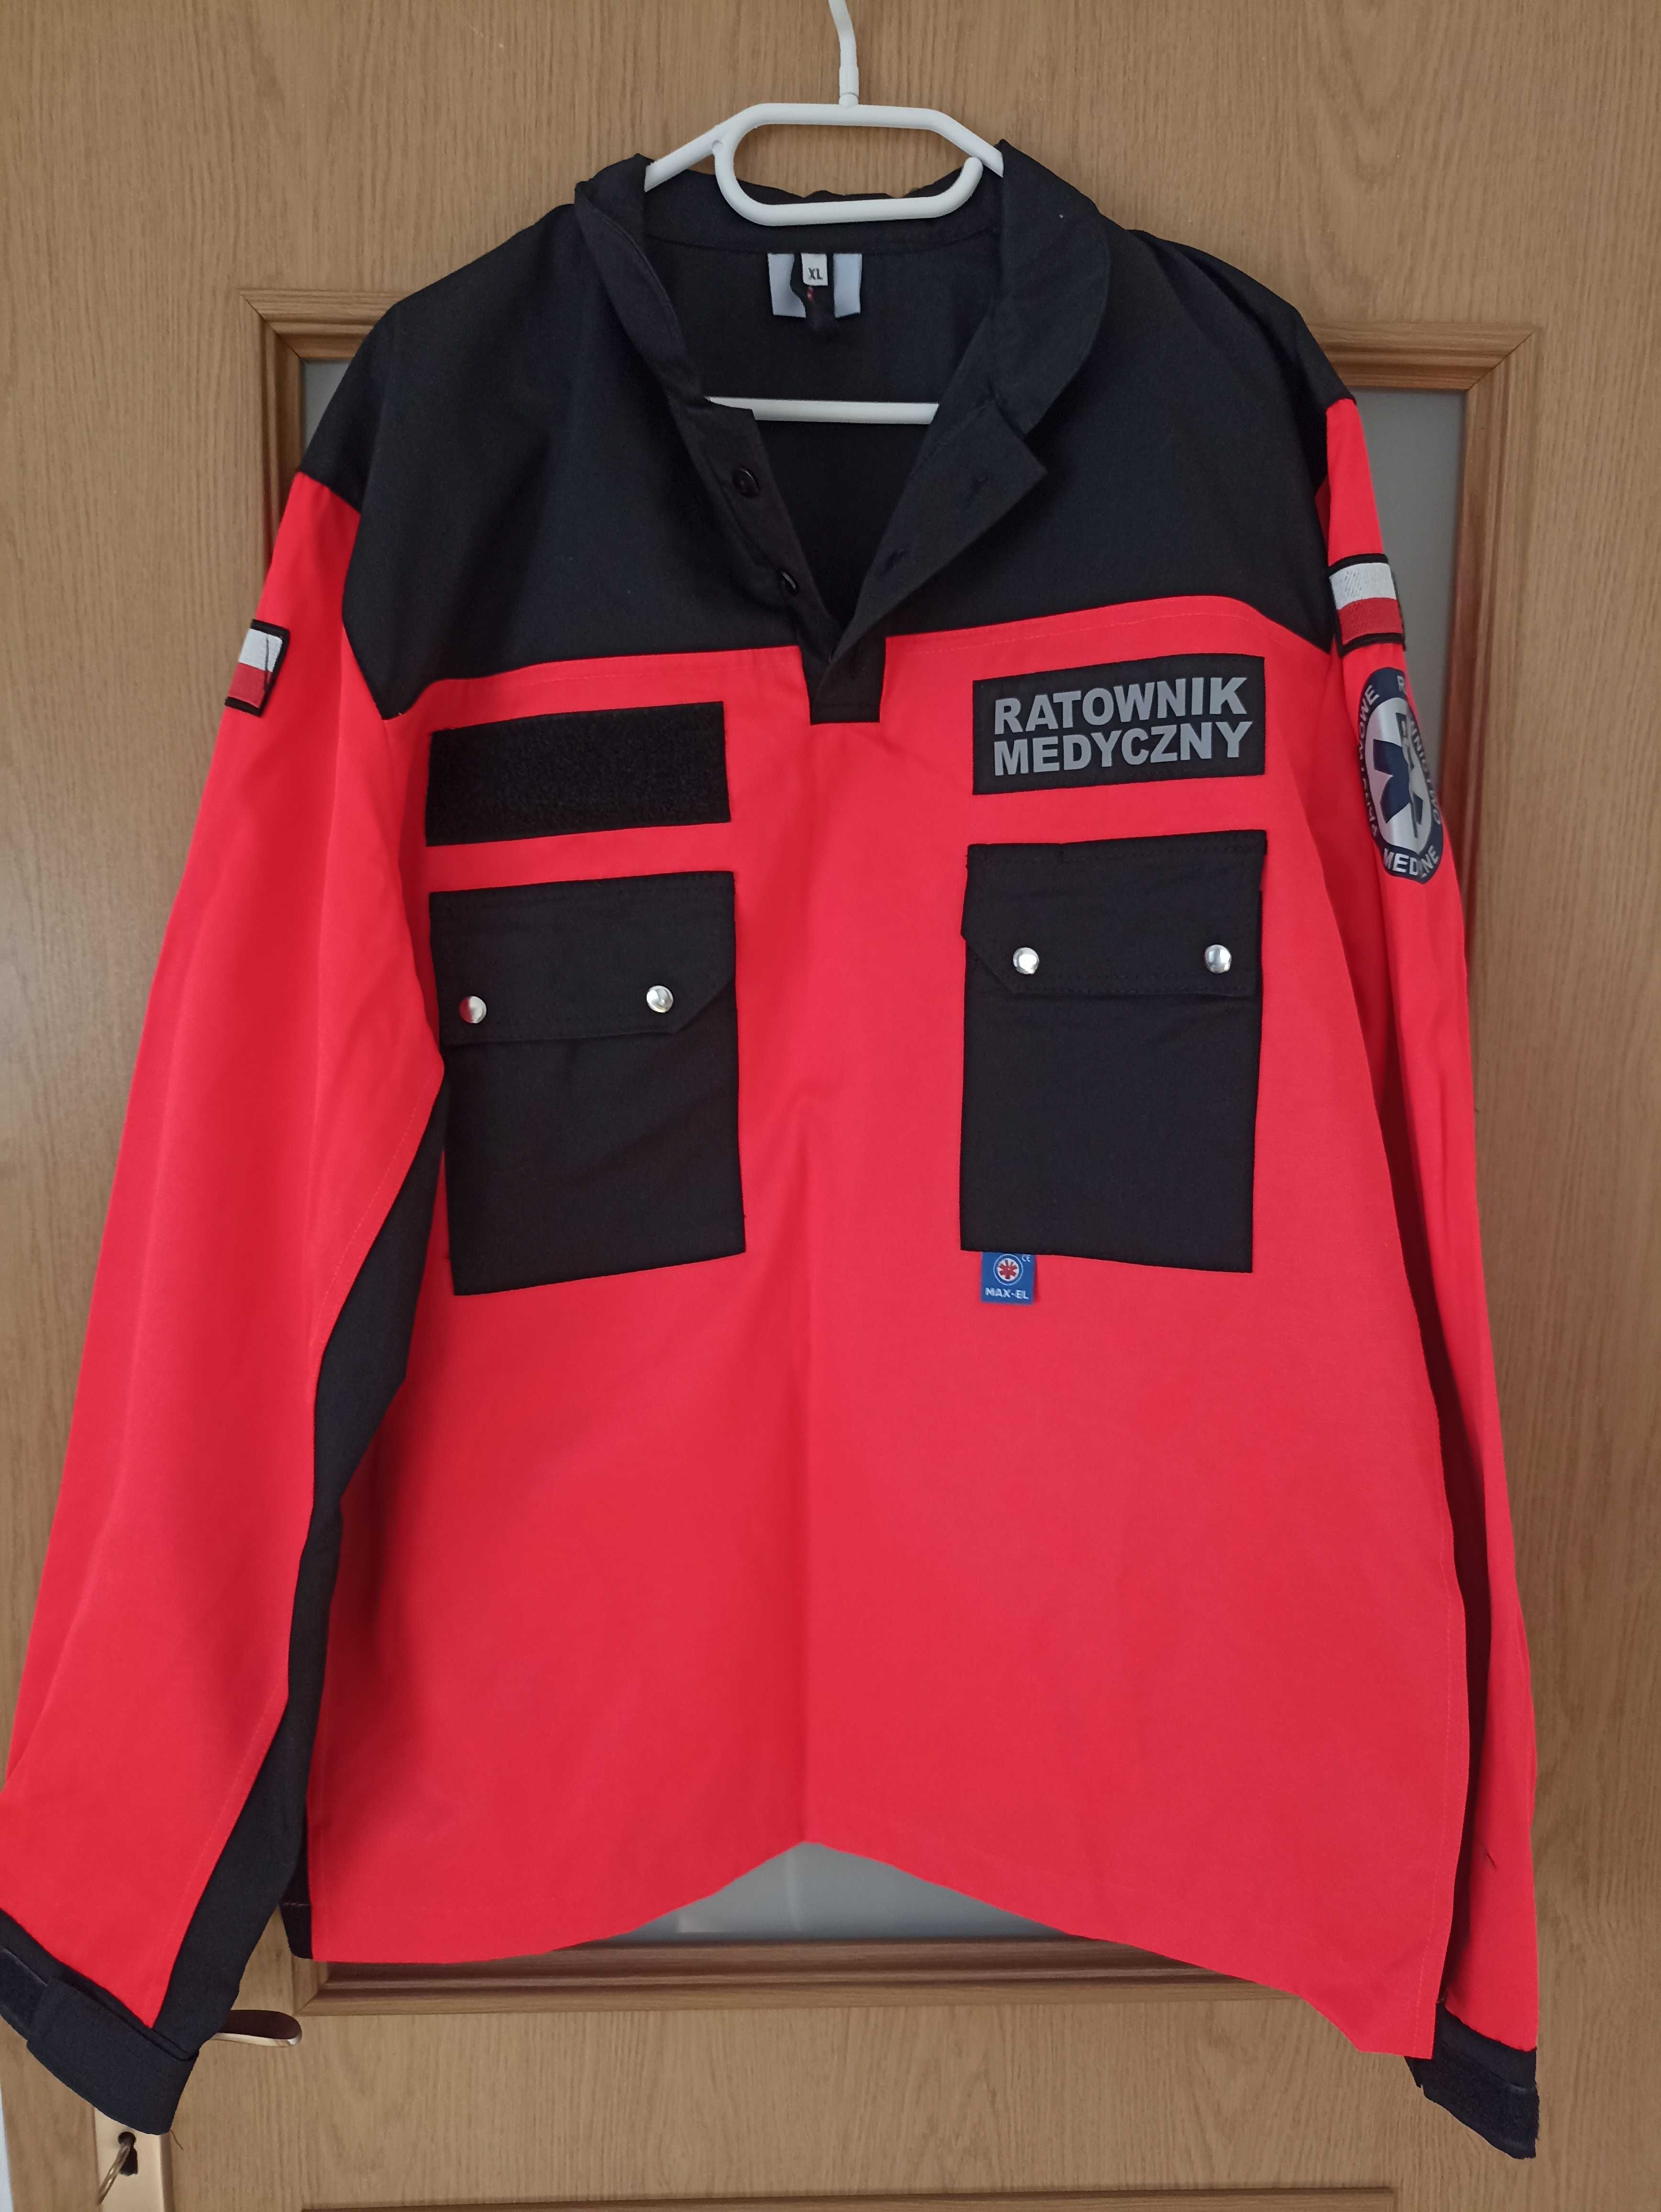 Odzież Ratownika Medycznego spodnie/koszula(bluza letnia)/kamizelka